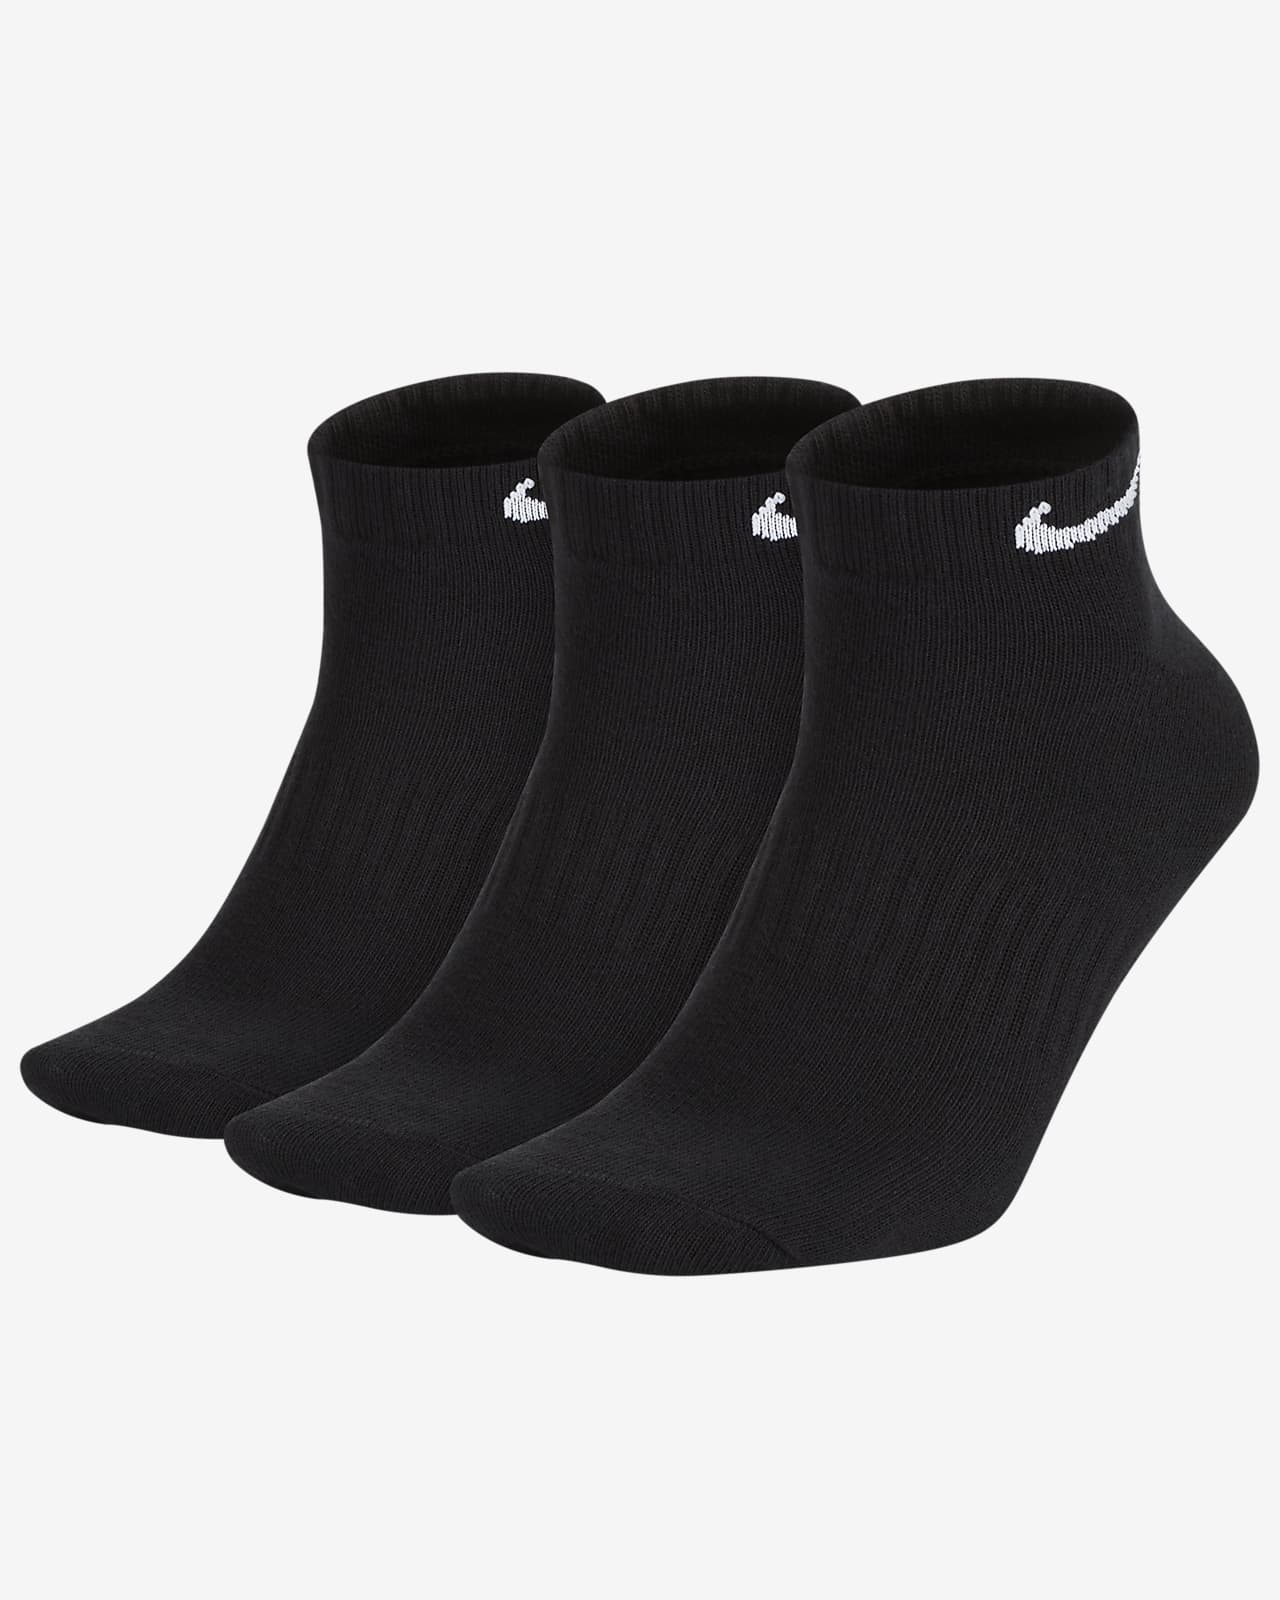 ถุงเท้าเทรนนิ่งไม่หุ้มข้อ Nike Everyday Lightweight (3 คู่)